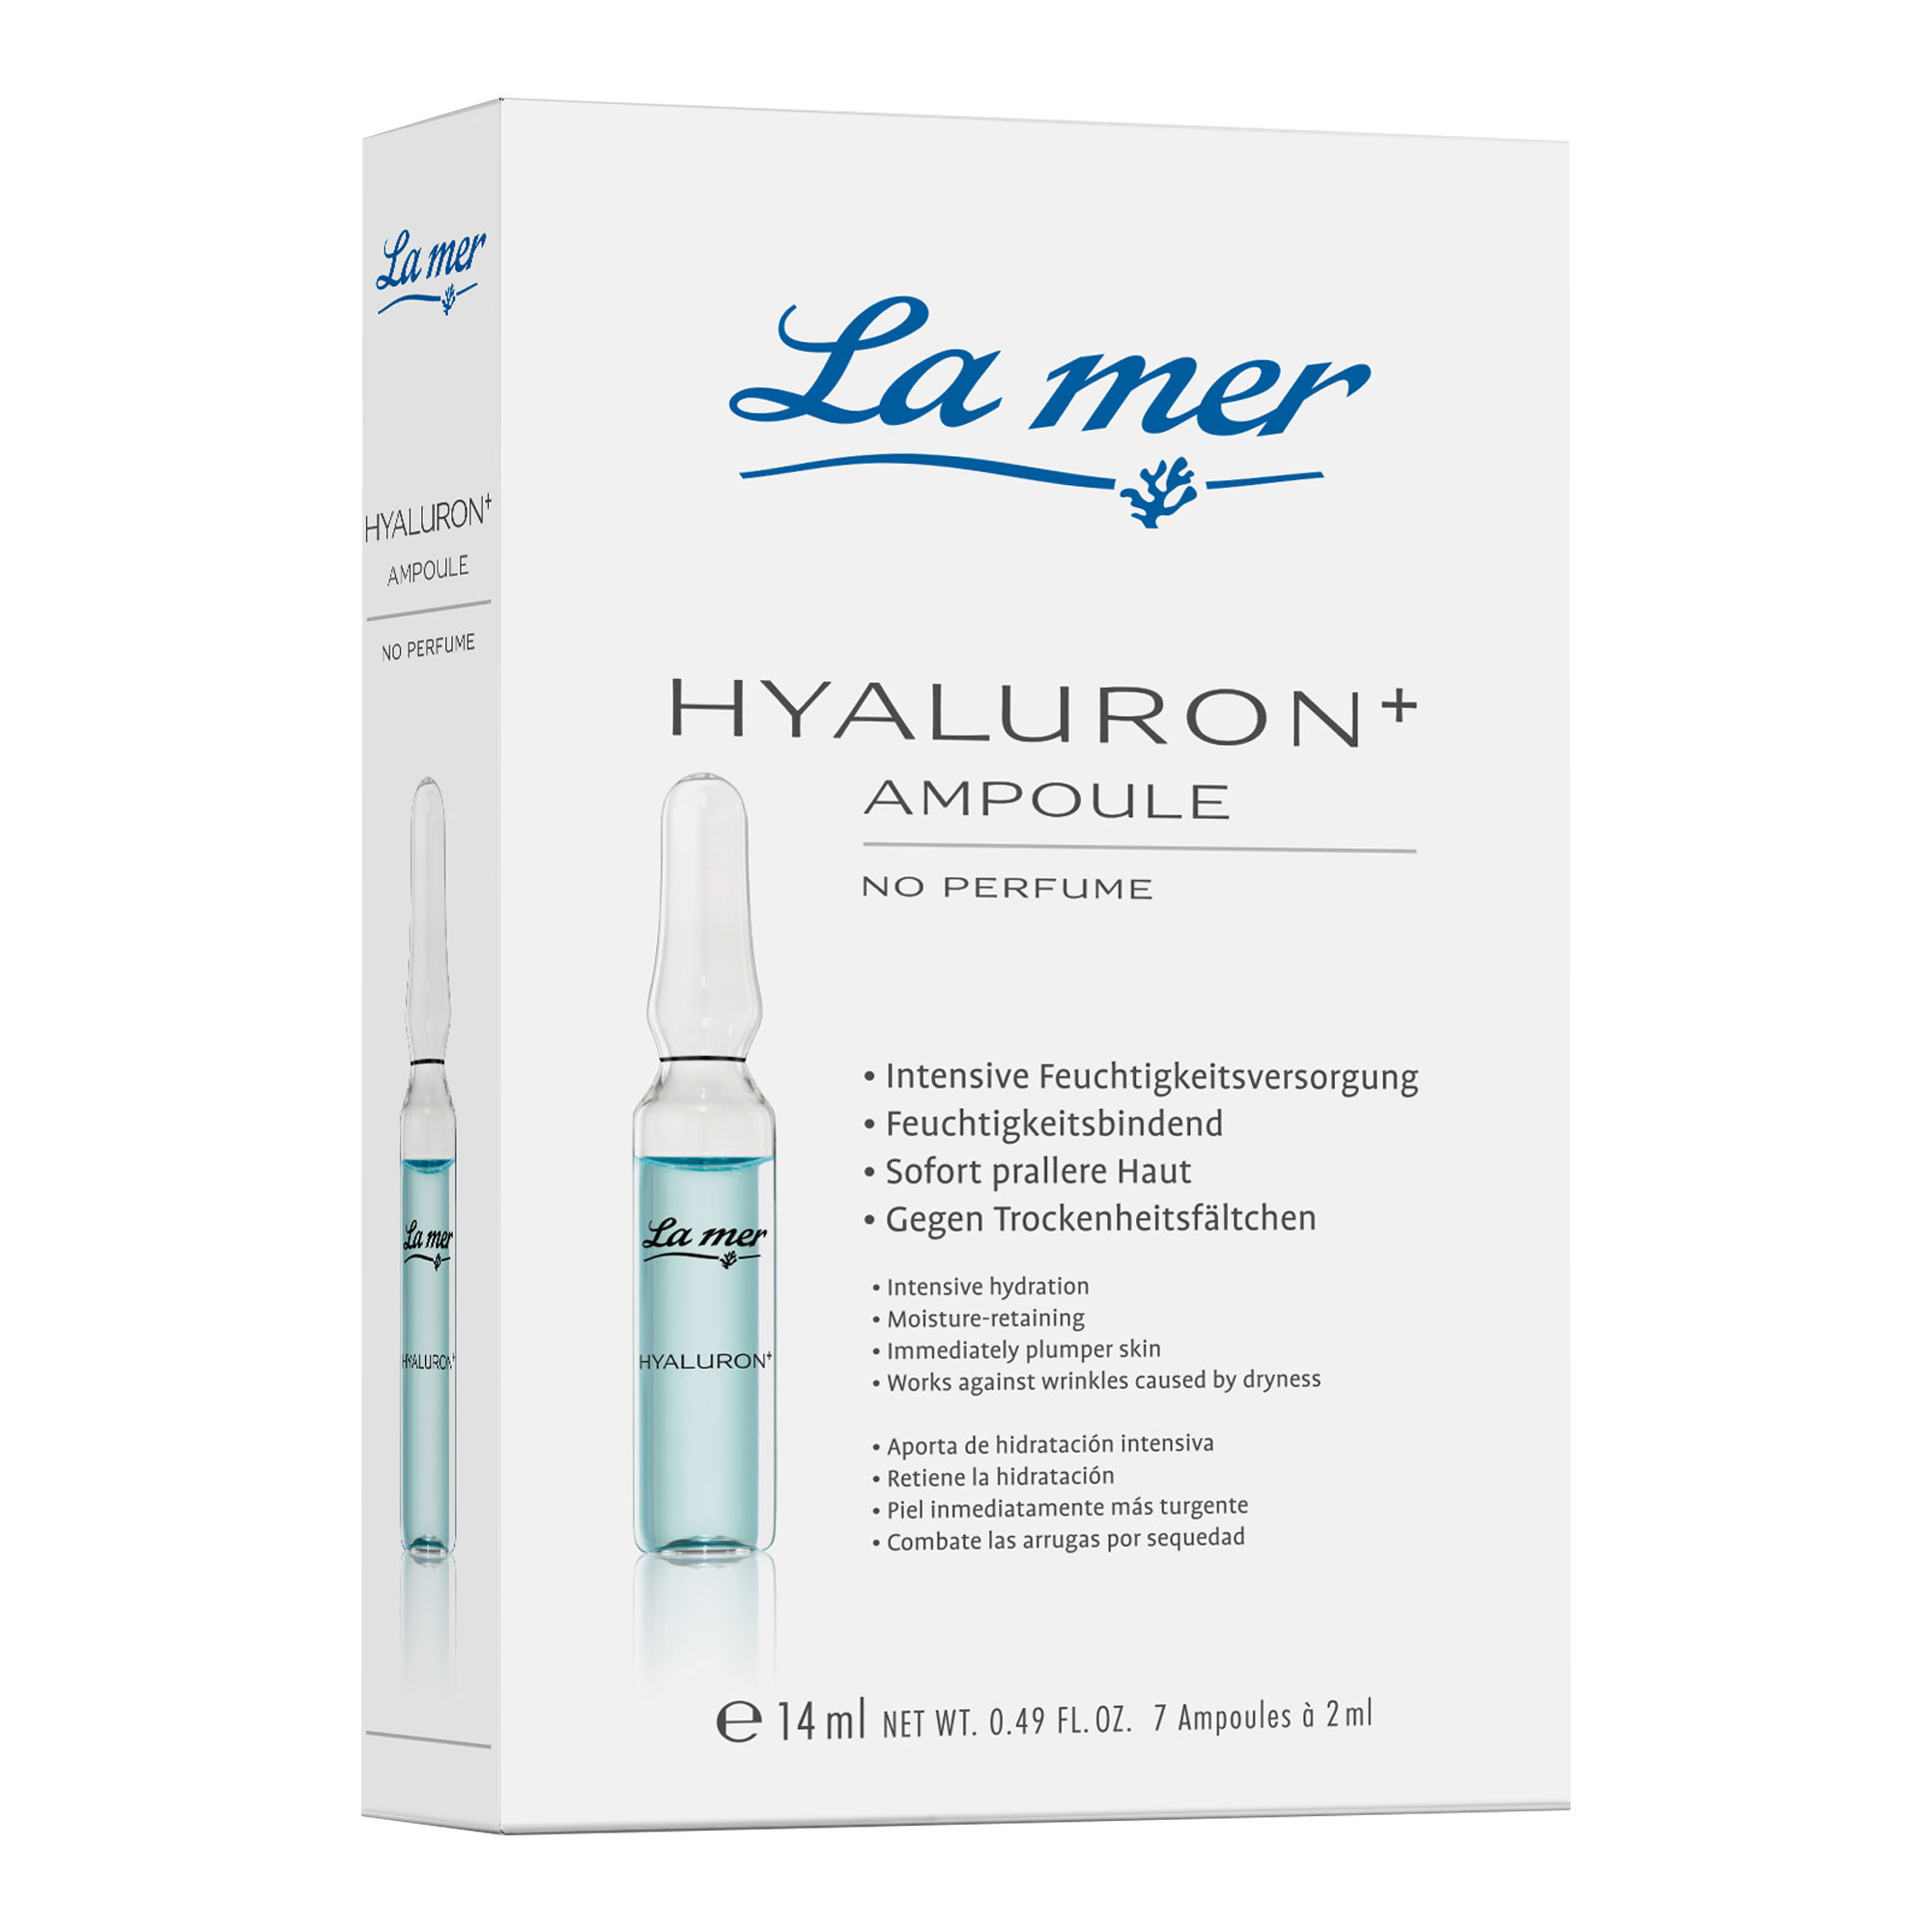 Wirkstoffkonzentrat mit Hyaluronsäure für eine intensive Feuchtigkeitsversorgung.